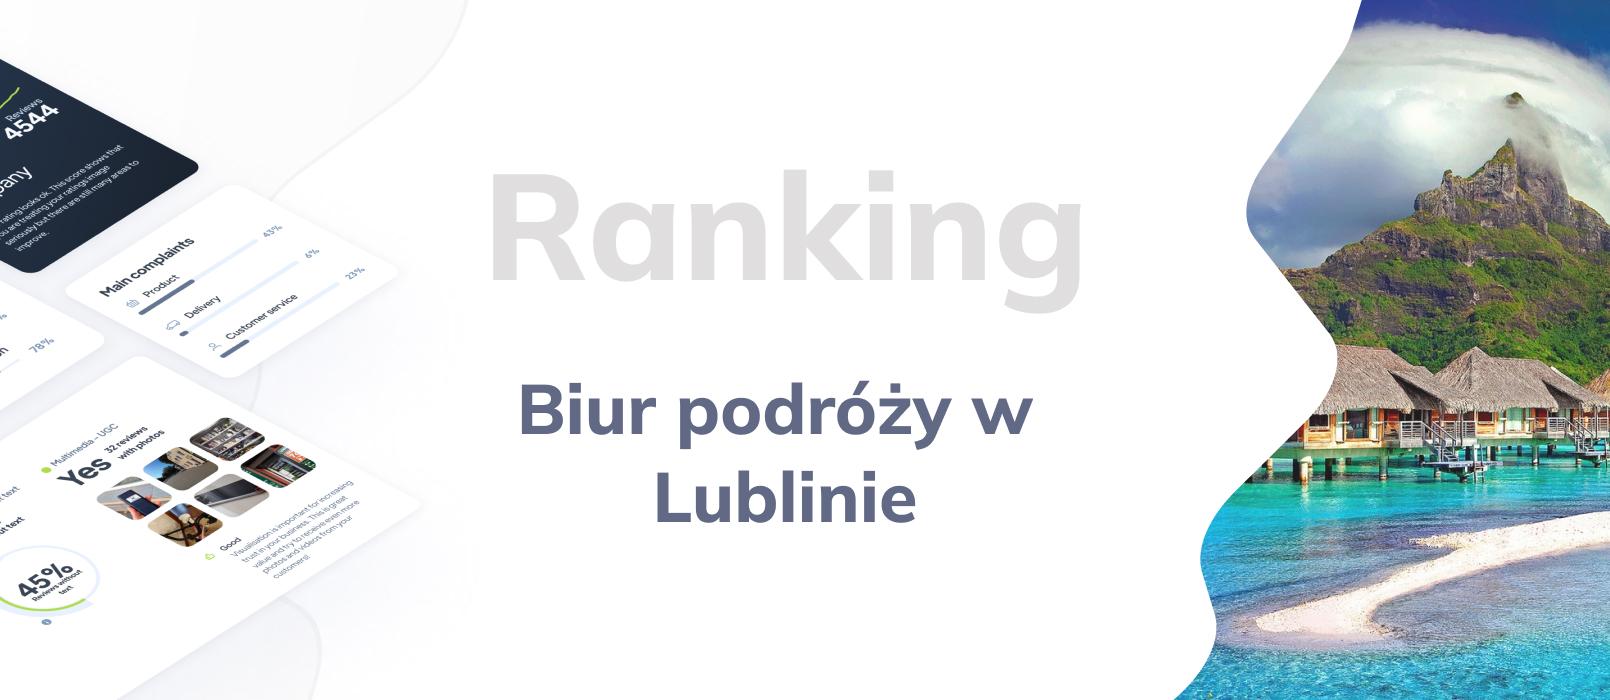 Biura podróży w Lublinie - ranking TOP 10